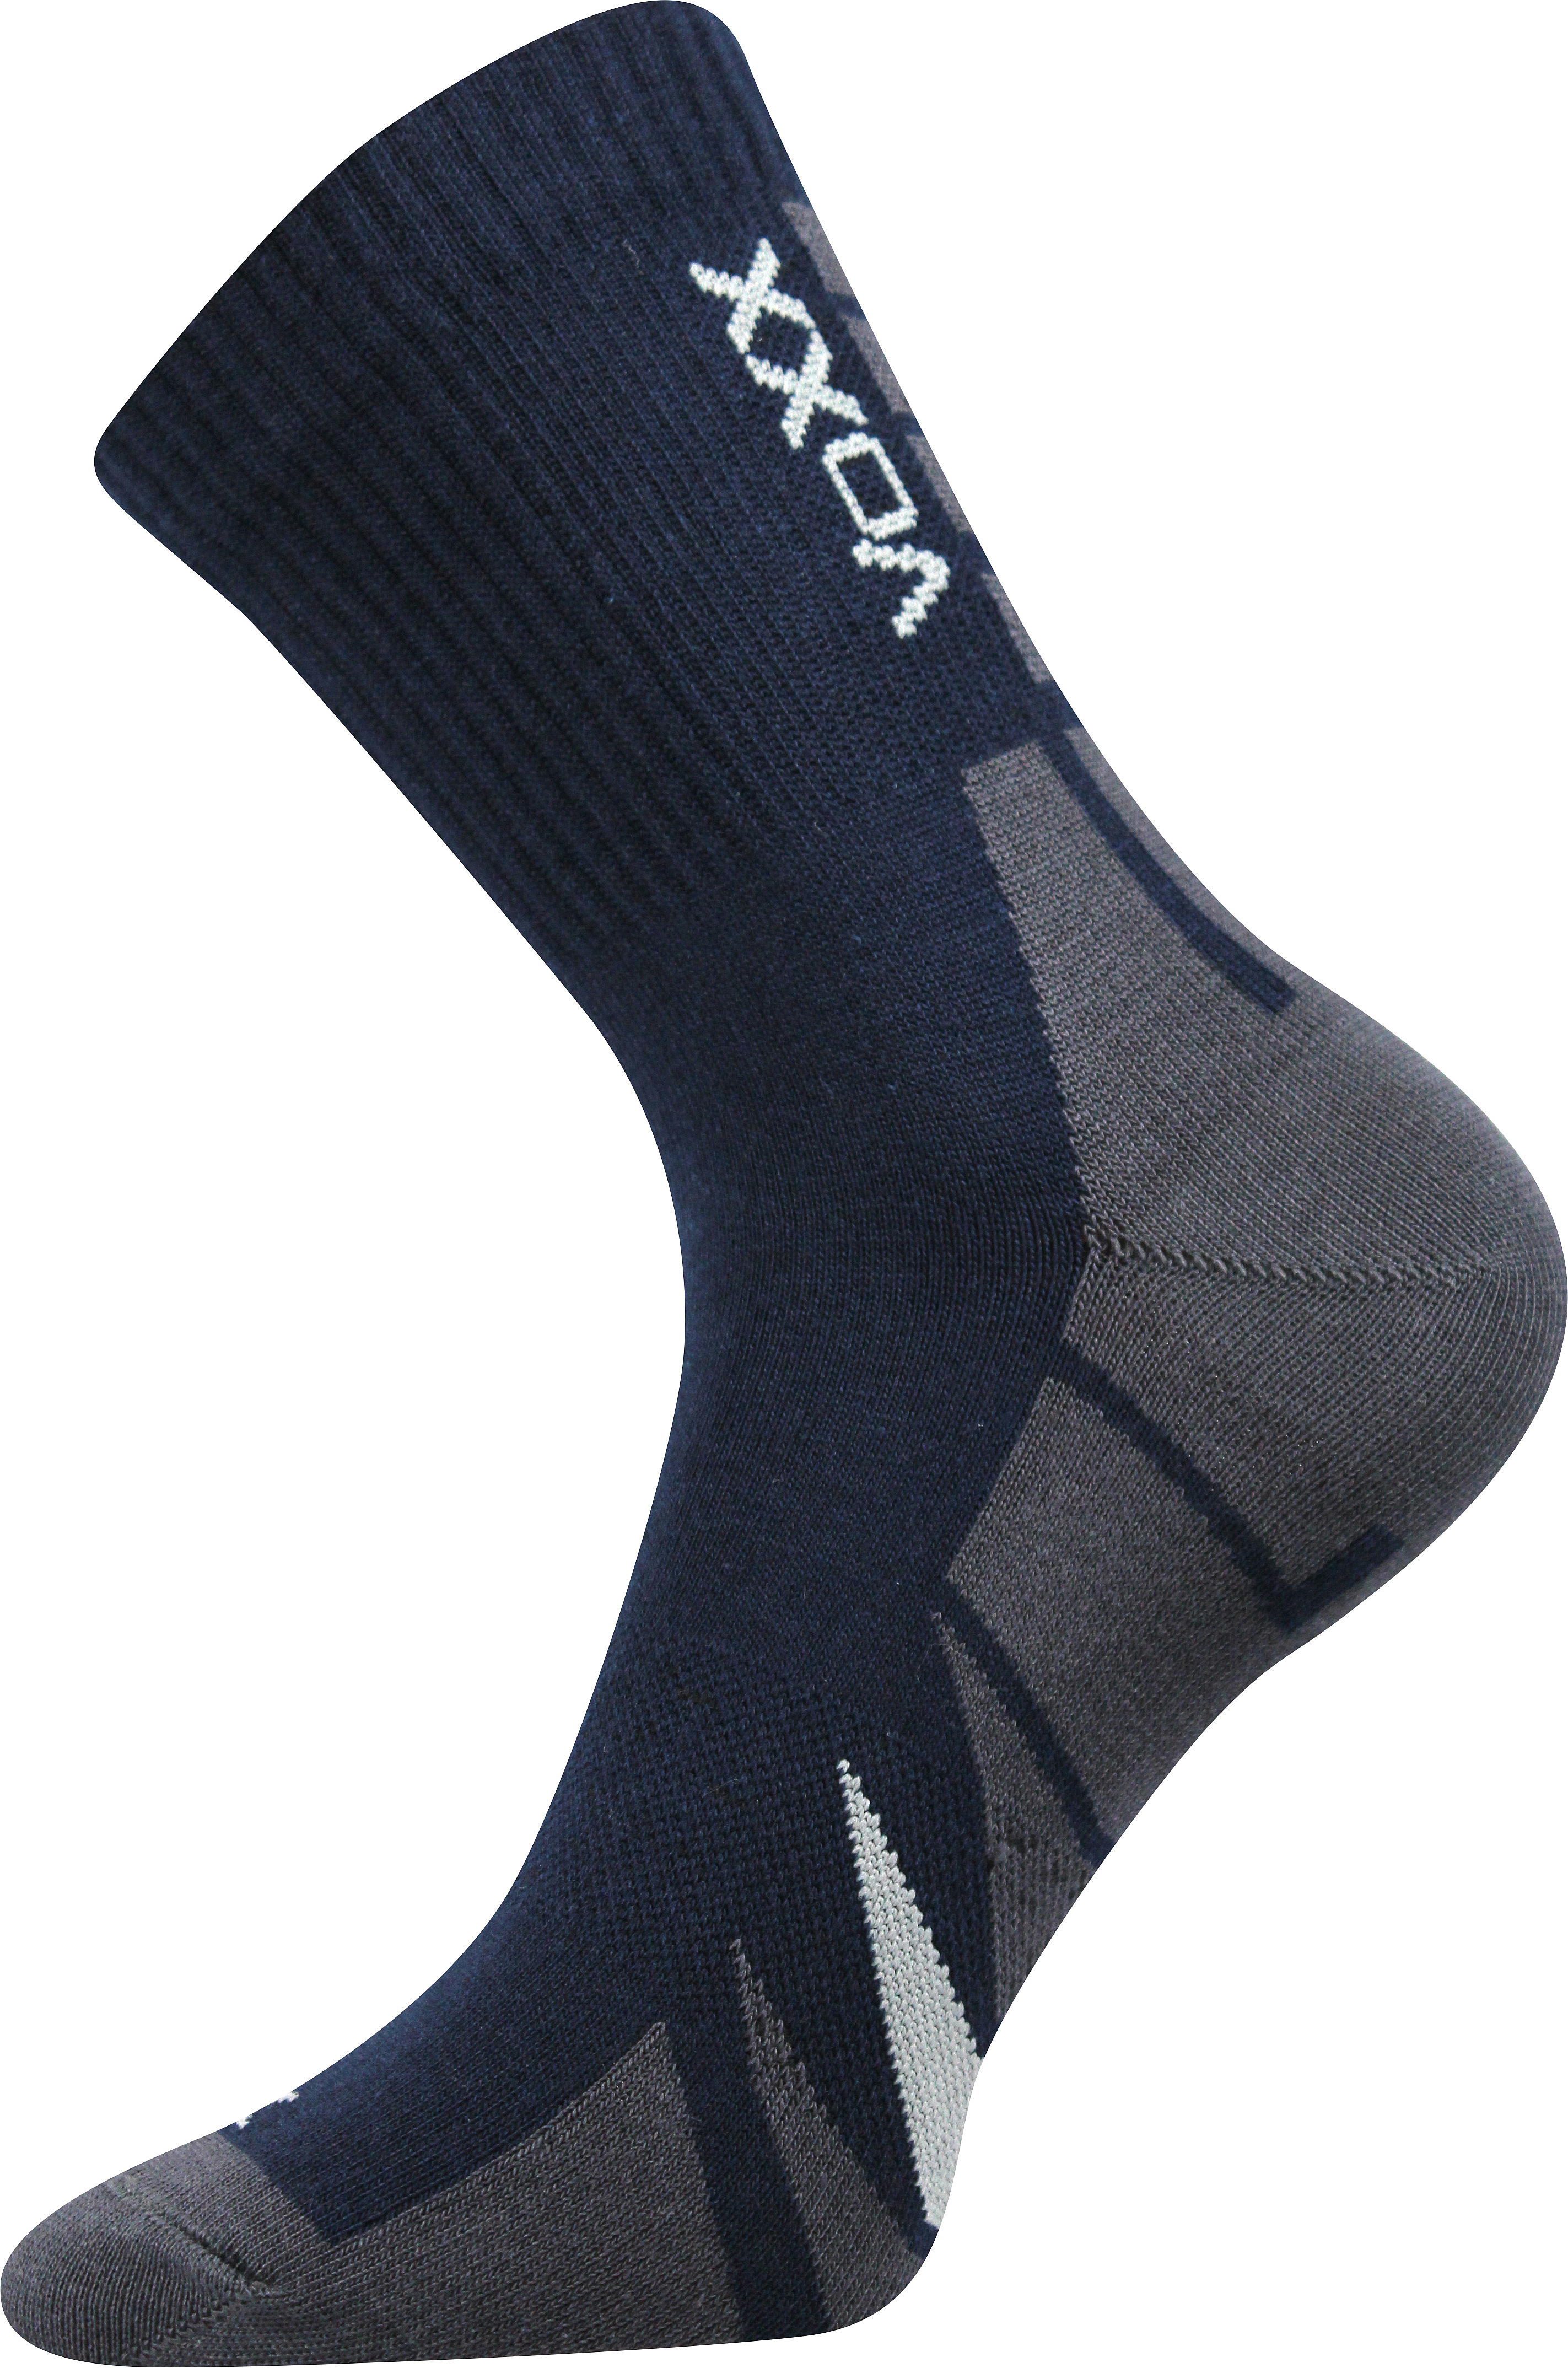 Ponožky sportovní Voxx Hermes - navy, 43-46